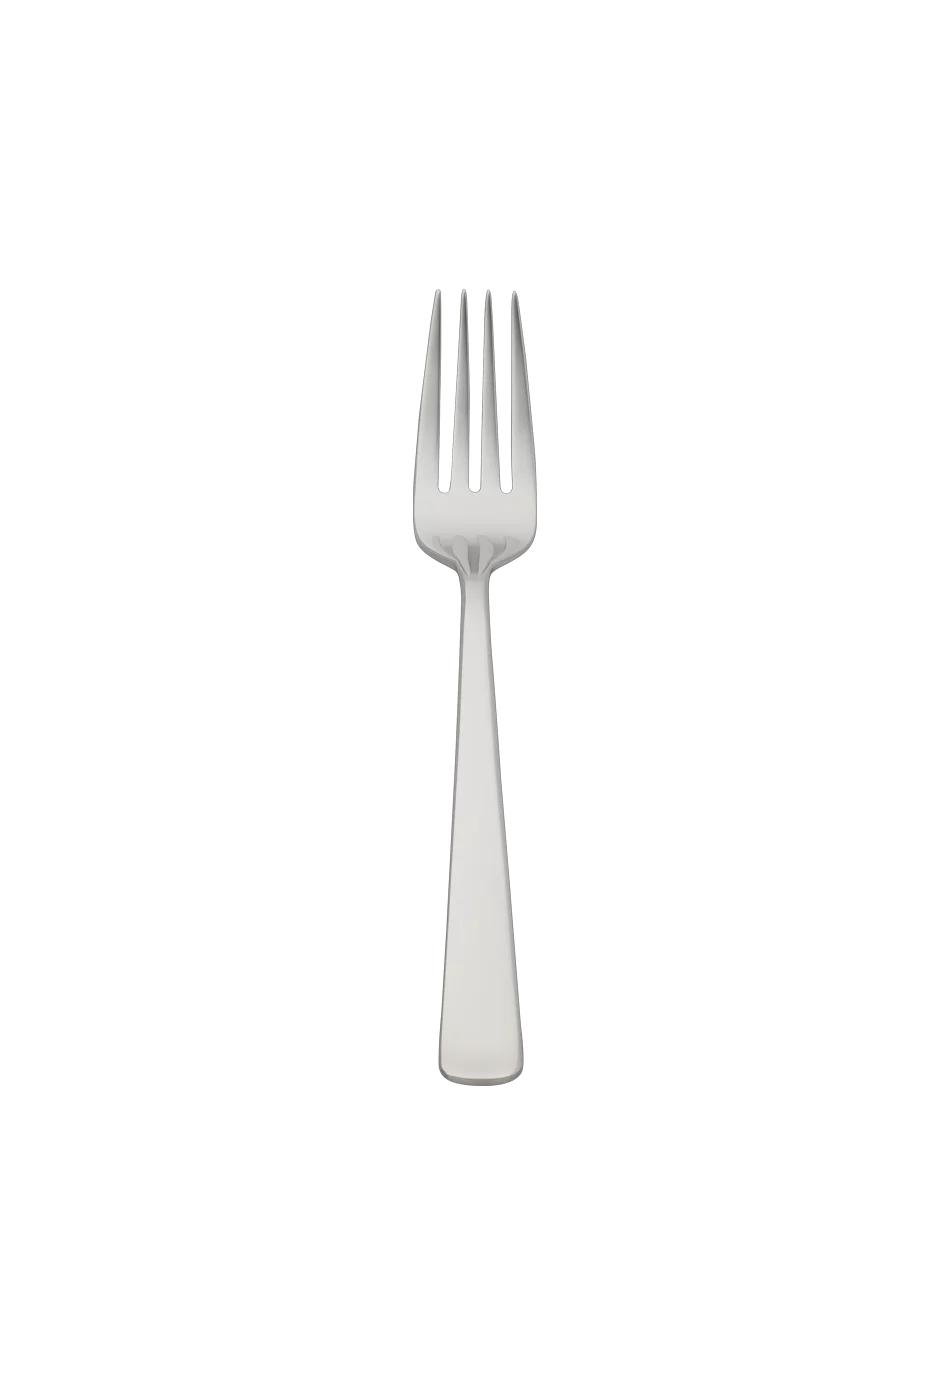 Atlantic Brillant Dessert Fork (18/8 stainless steel)